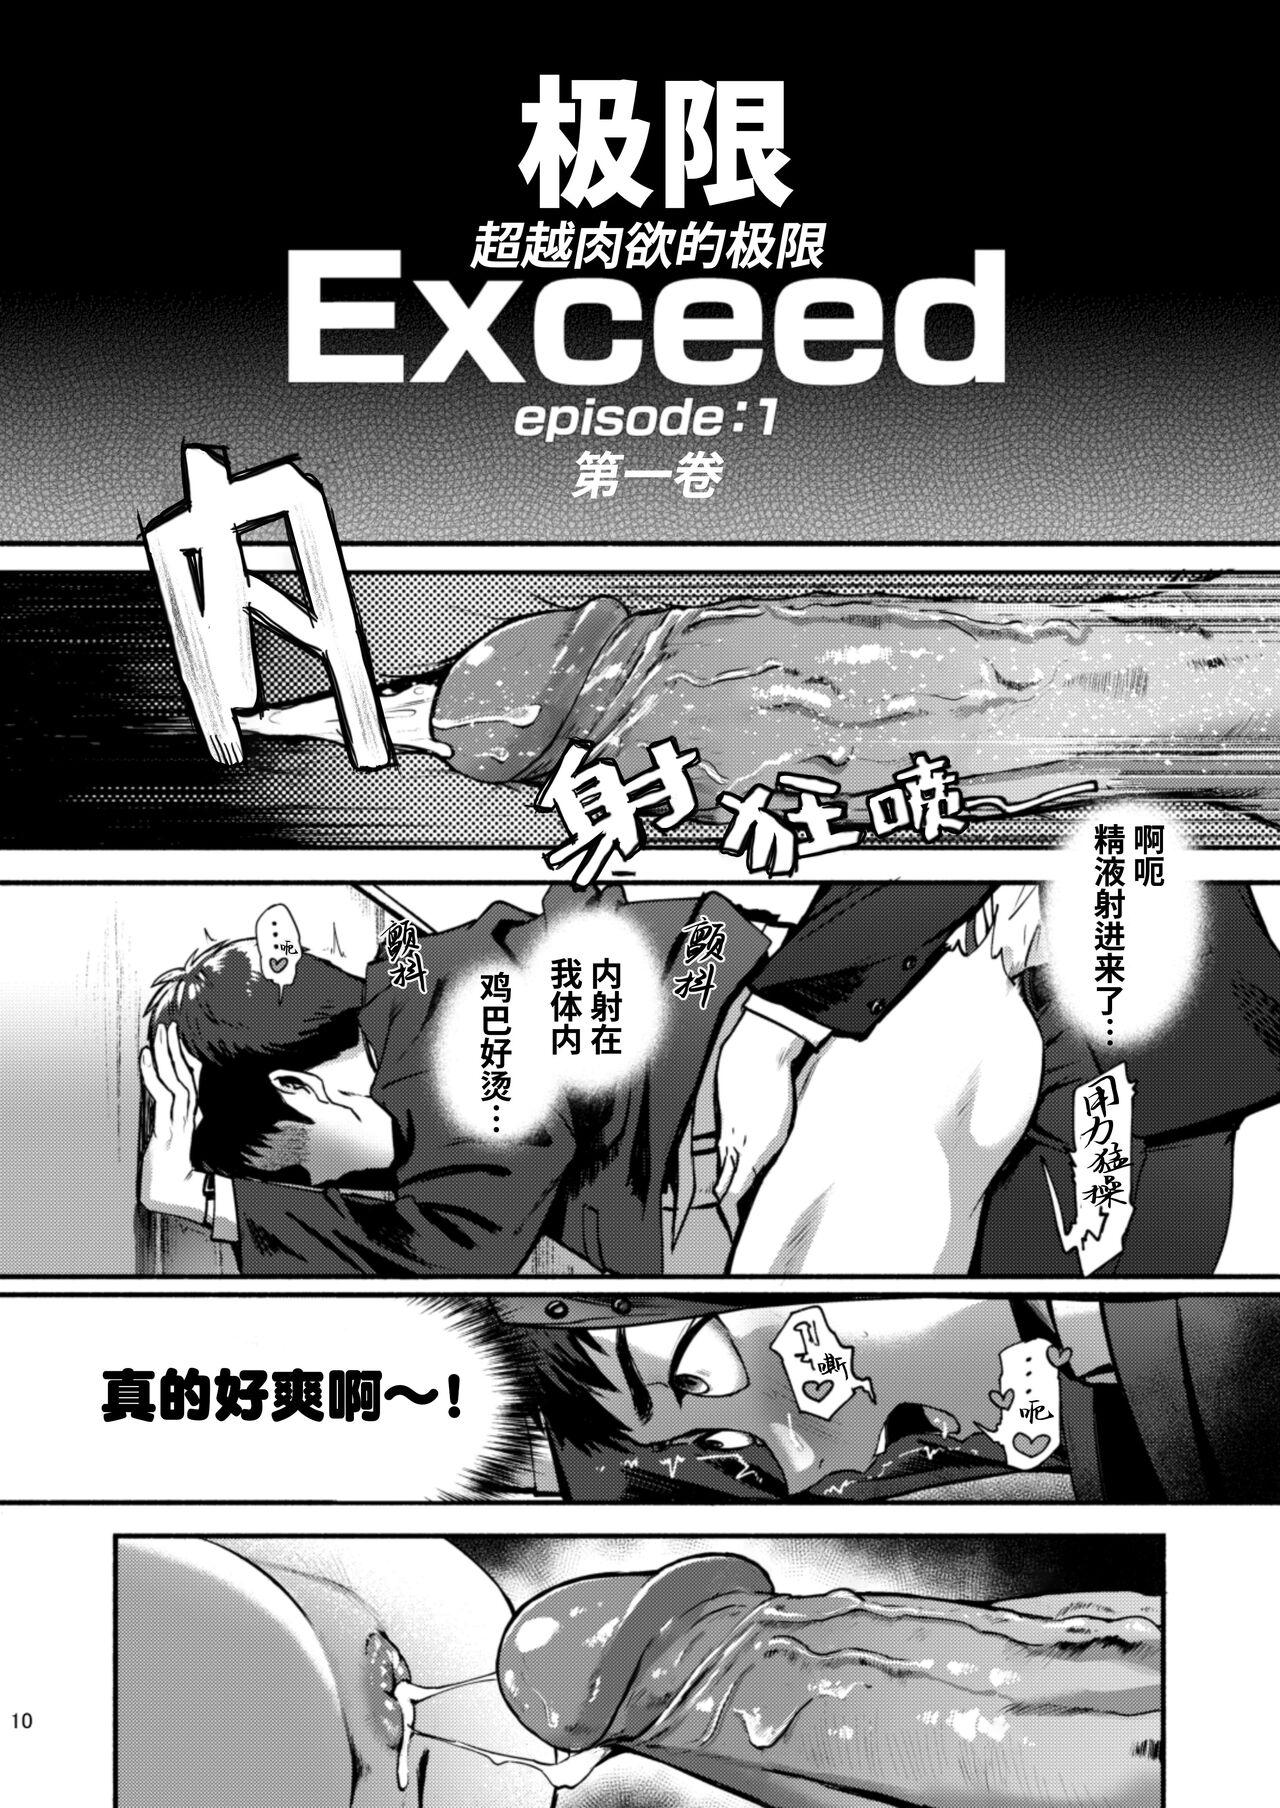 Eurosex Genkai Exceed Episode 1 | 极限 第1卷 - Original Peeing - Page 11